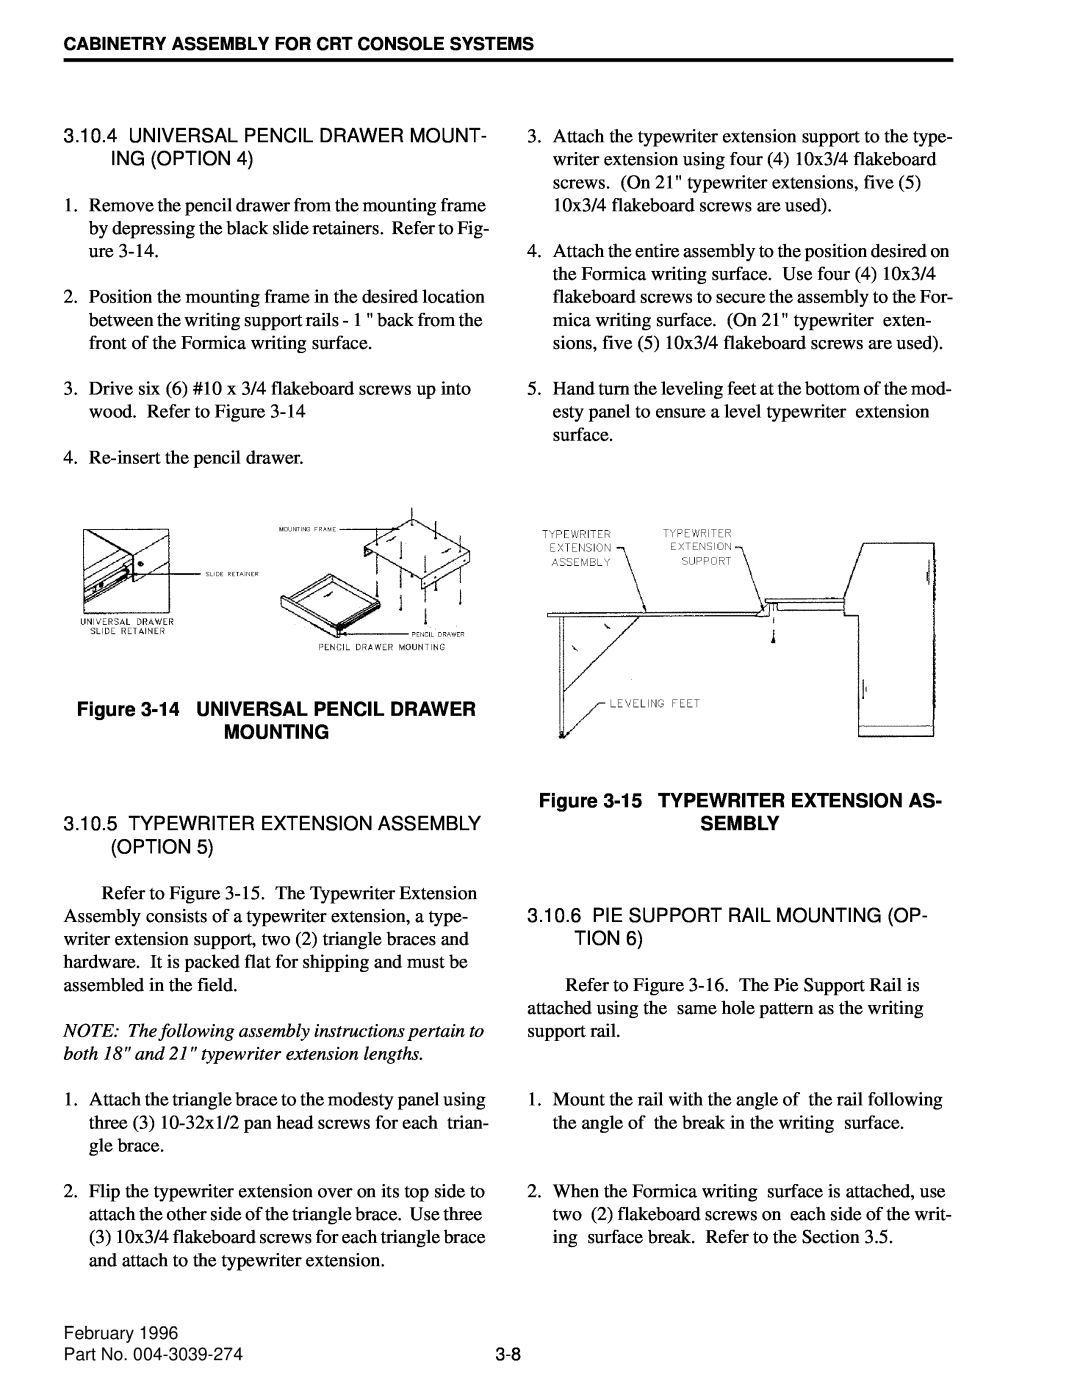 EFJohnson VR-CM50 manual 14UNIVERSAL PENCIL DRAWER MOUNTING, 15TYPEWRITER EXTENSION AS 